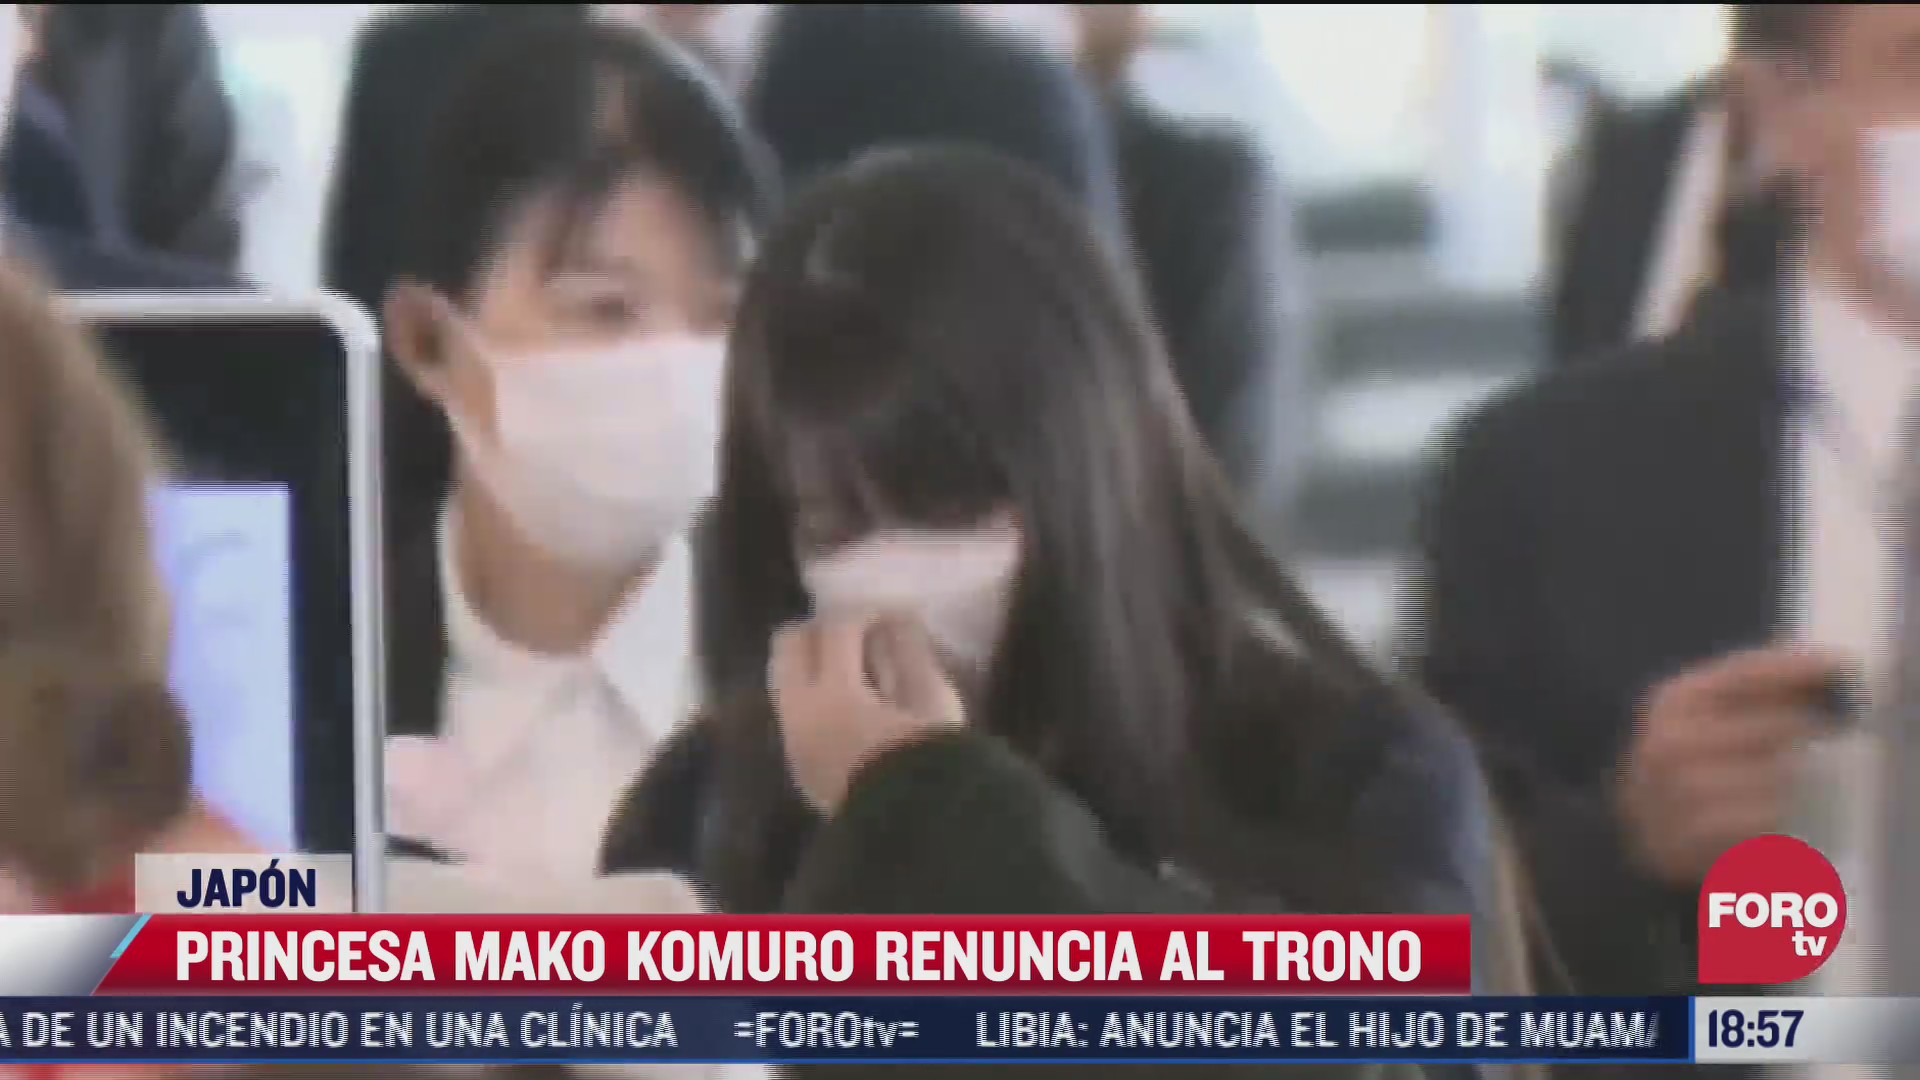 princesa mako komuro renuncia al trono en japon